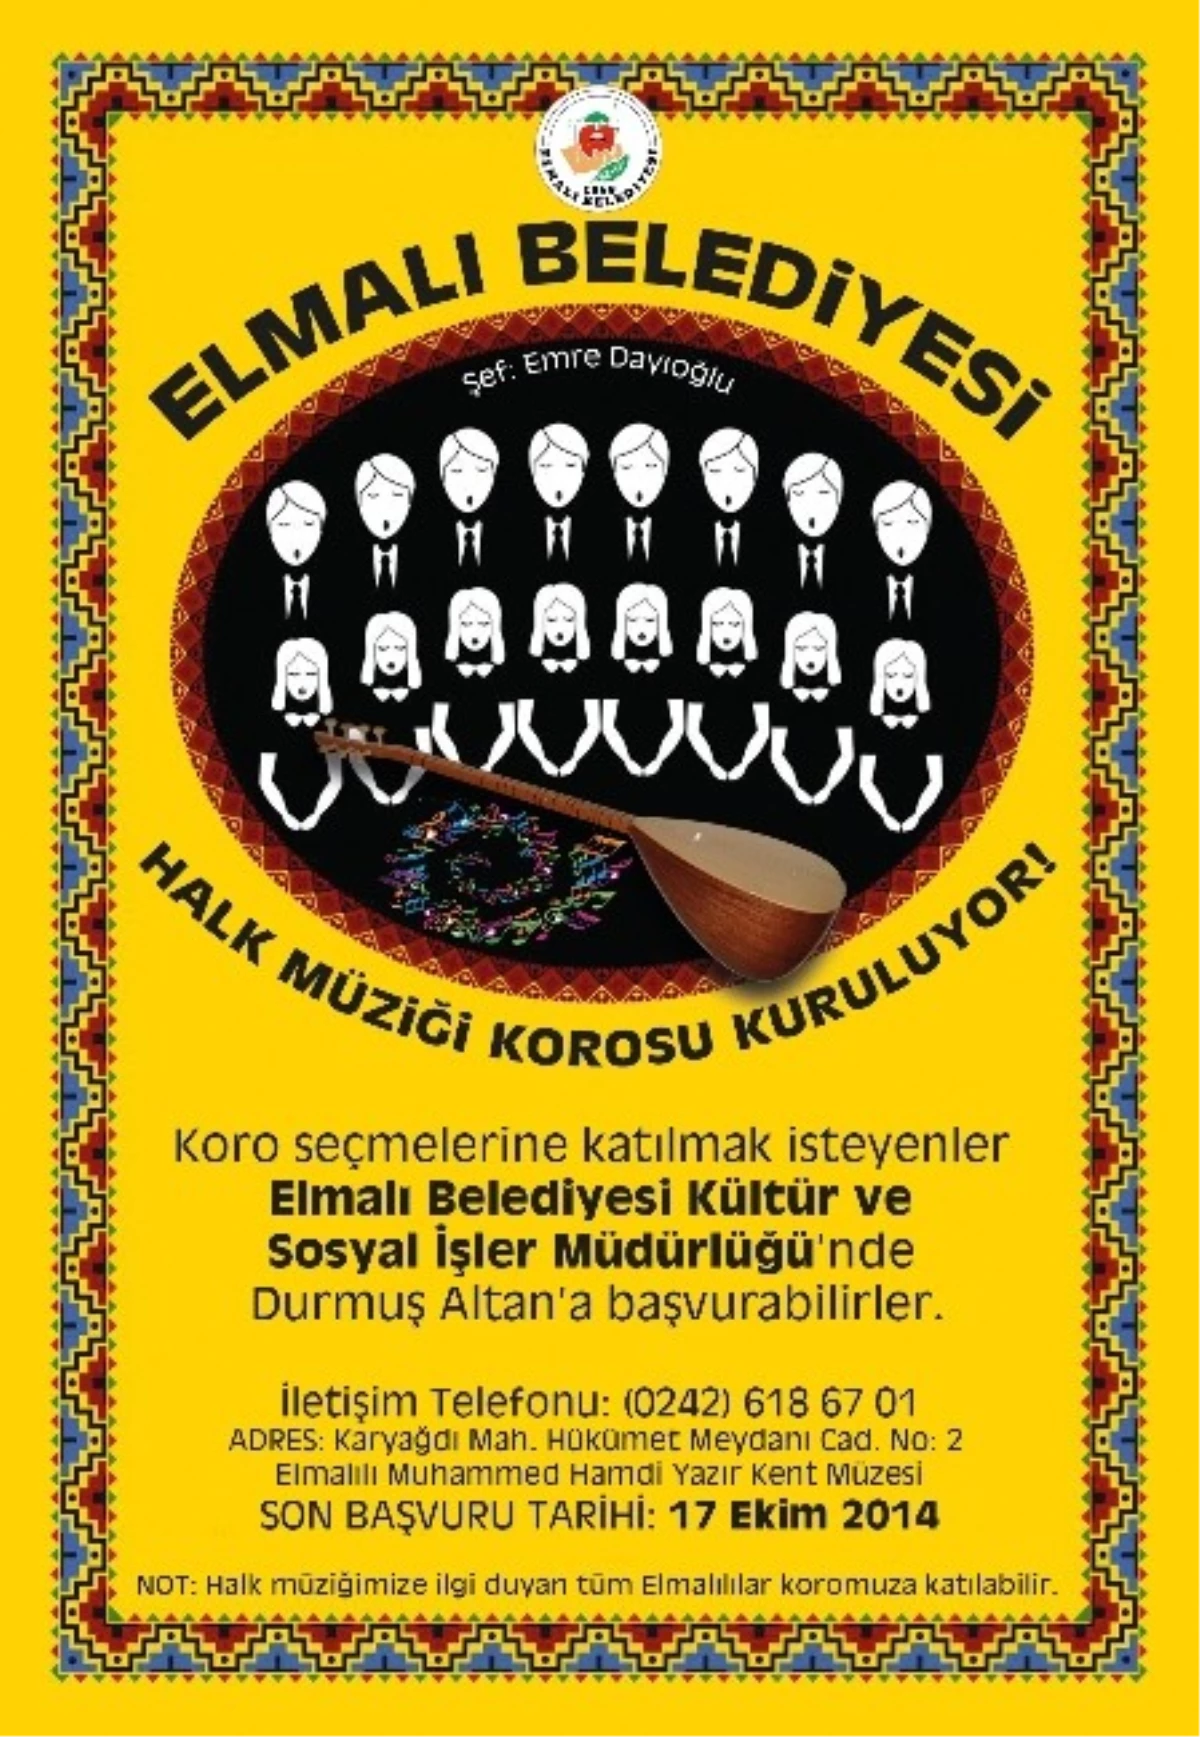 Elmalı Belediyesi Türk Halk Müziği Korosu Kuruyor